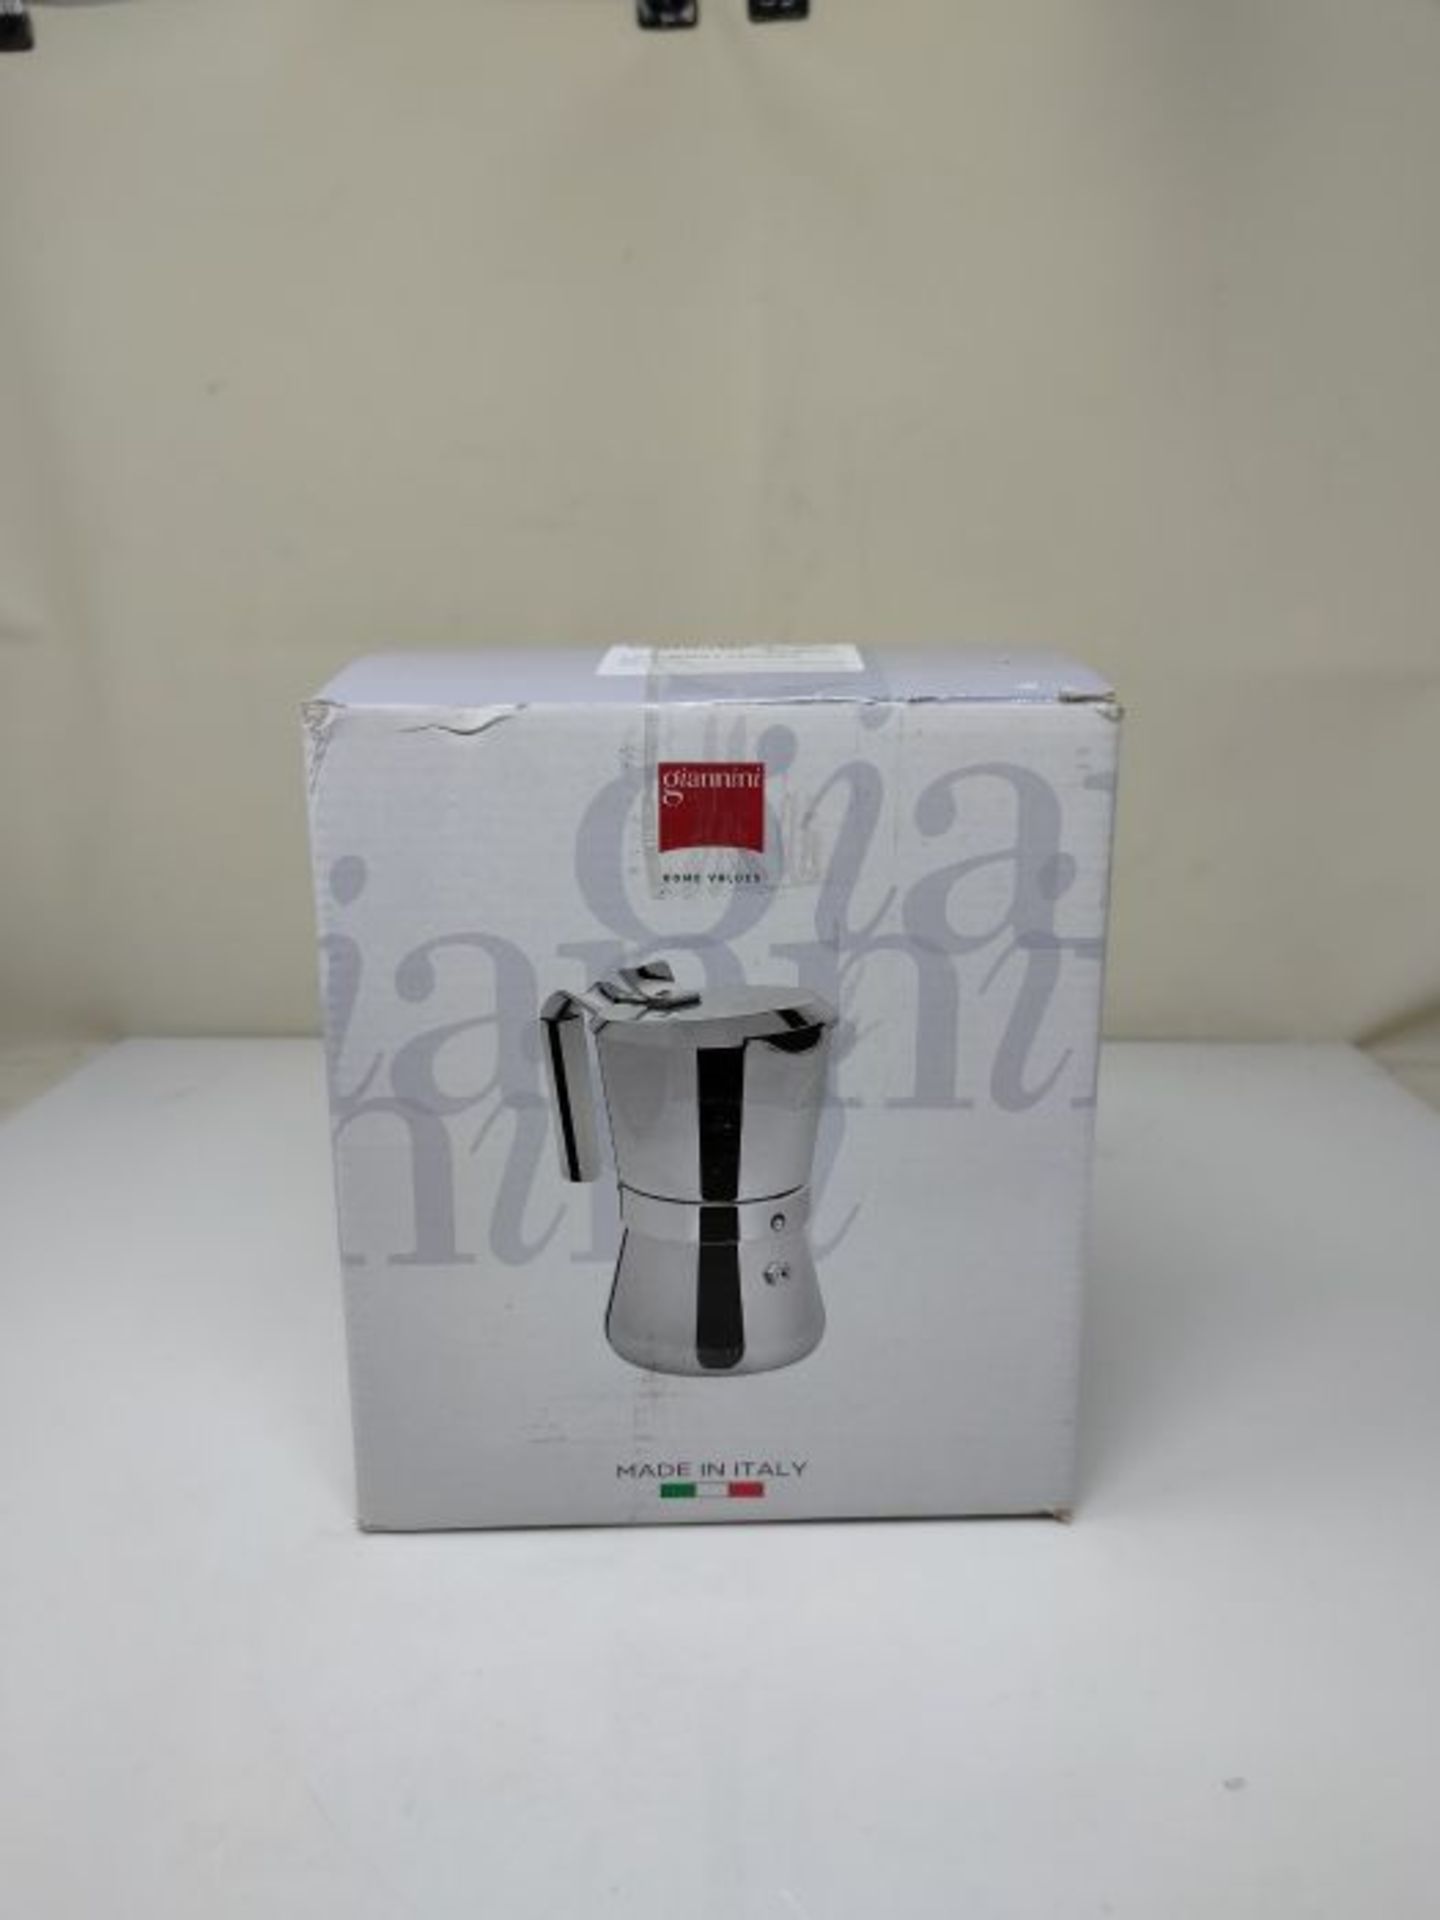 RRP £89.00 Giannini 103 Espresso Maker, Silver - Image 2 of 3